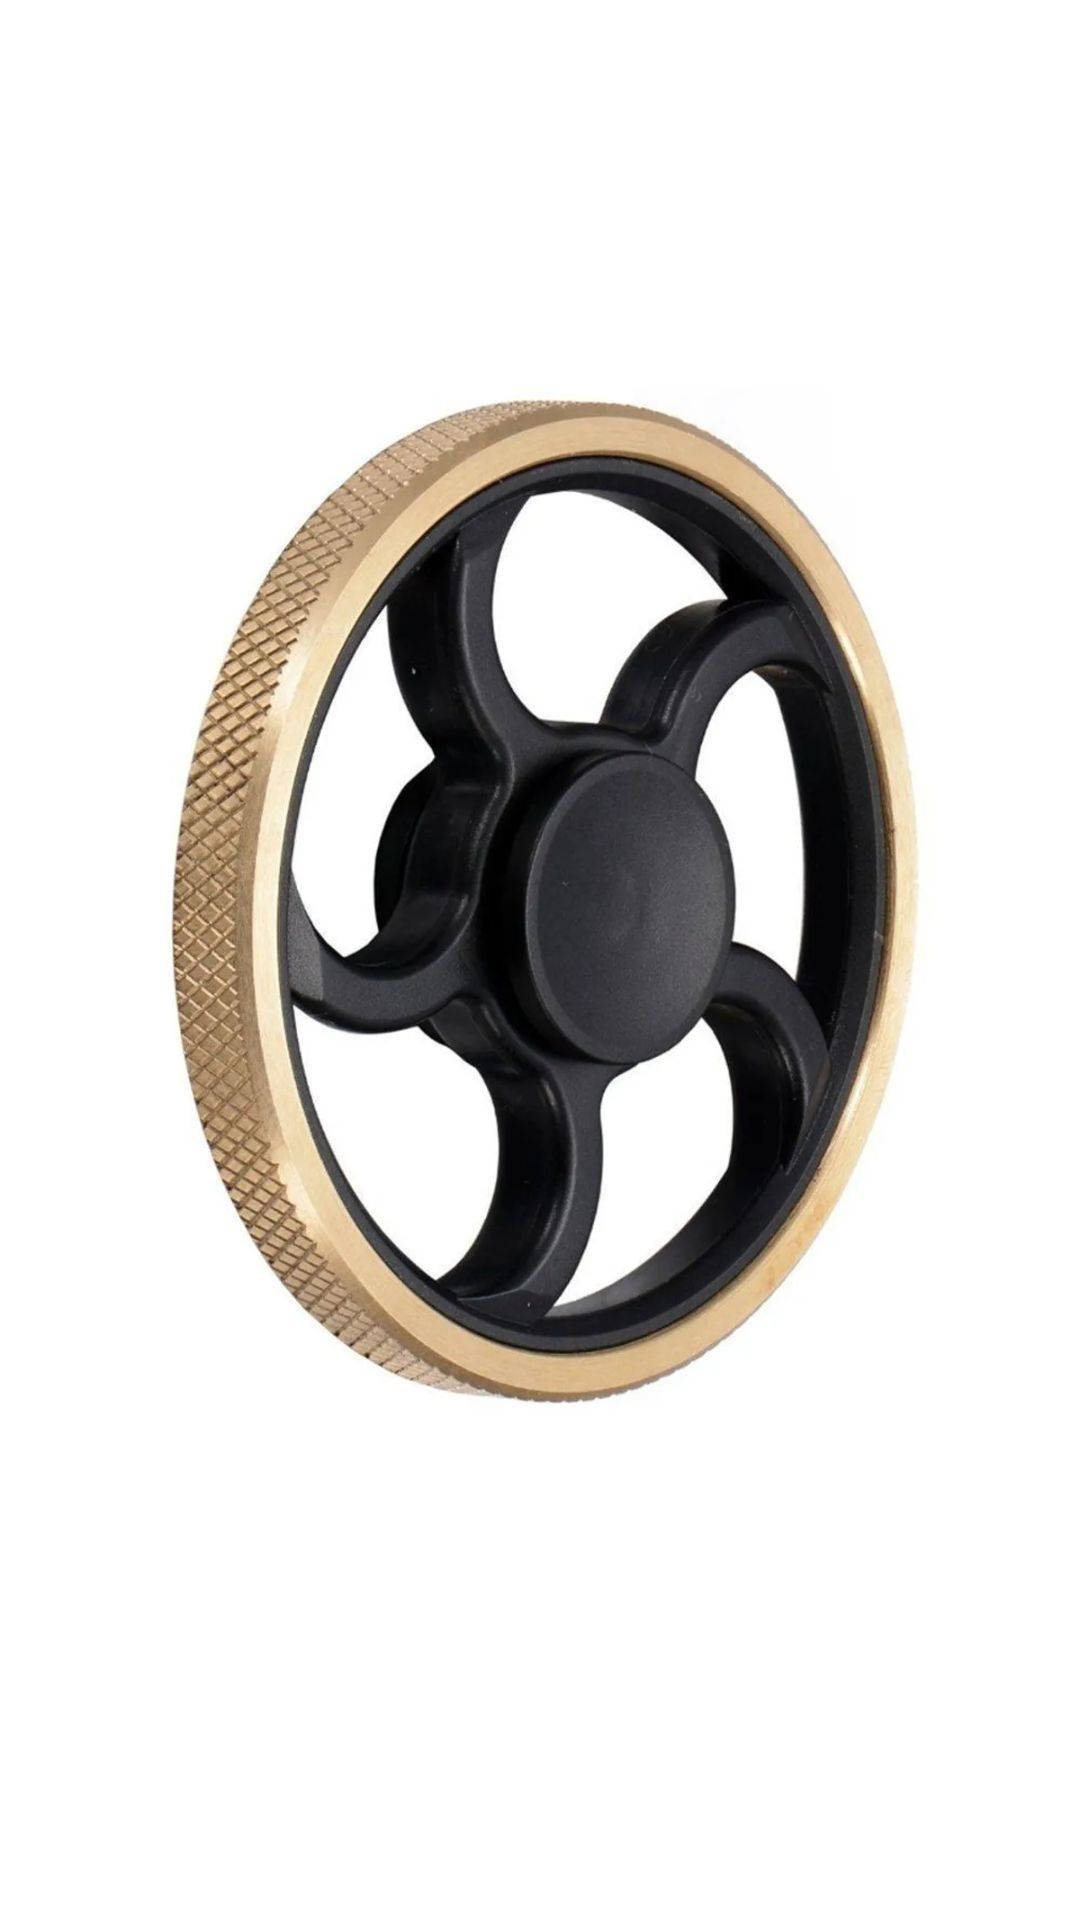 Hand-held Fidget Toy Spinning Wheel Background